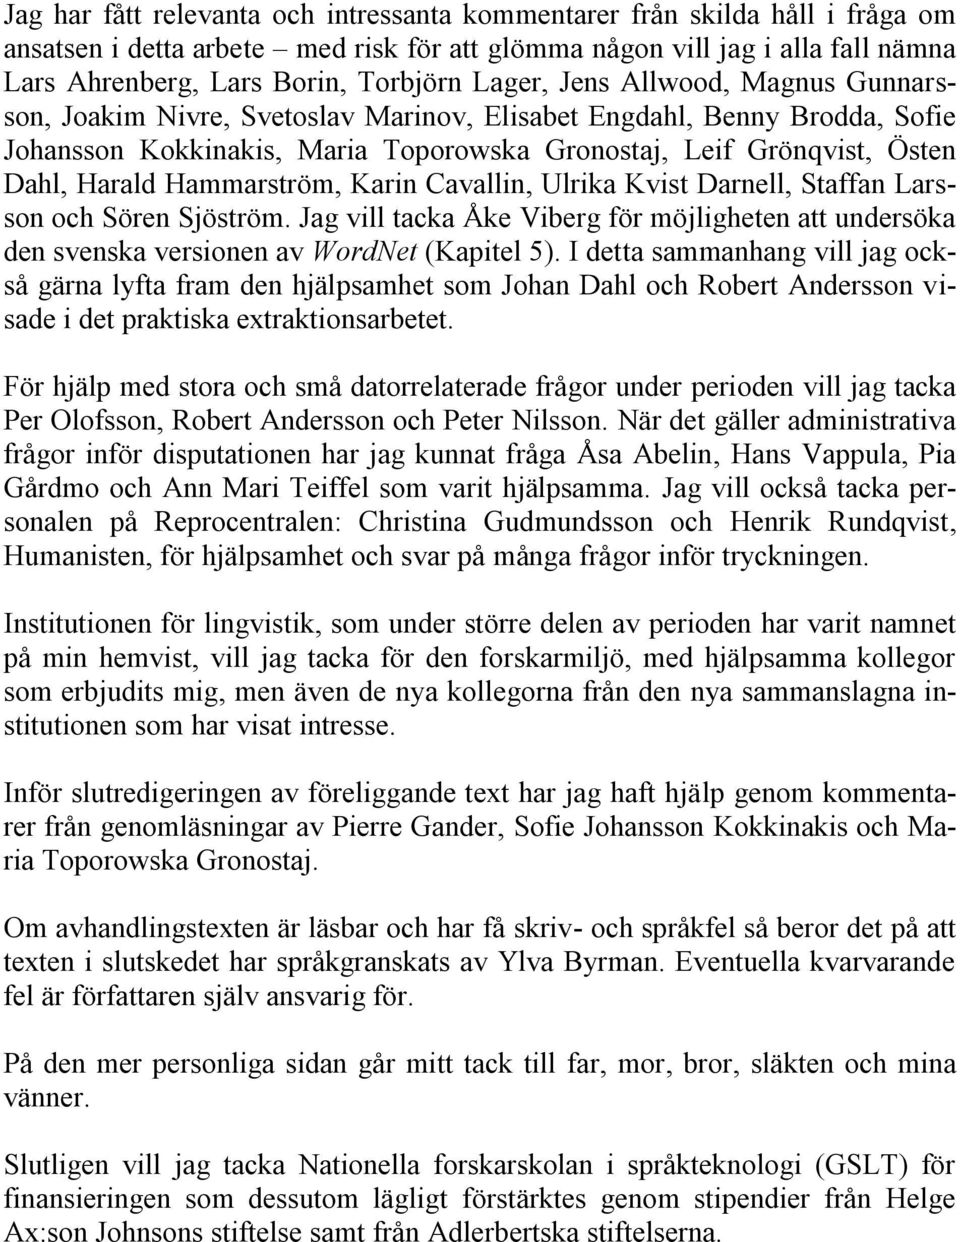 Hammarström, Karin Cavallin, Ulrika Kvist Darnell, Staffan Larsson och Sören Sjöström. Jag vill tacka Åke Viberg för möjligheten att undersöka den svenska versionen av WordNet (Kapitel 5).